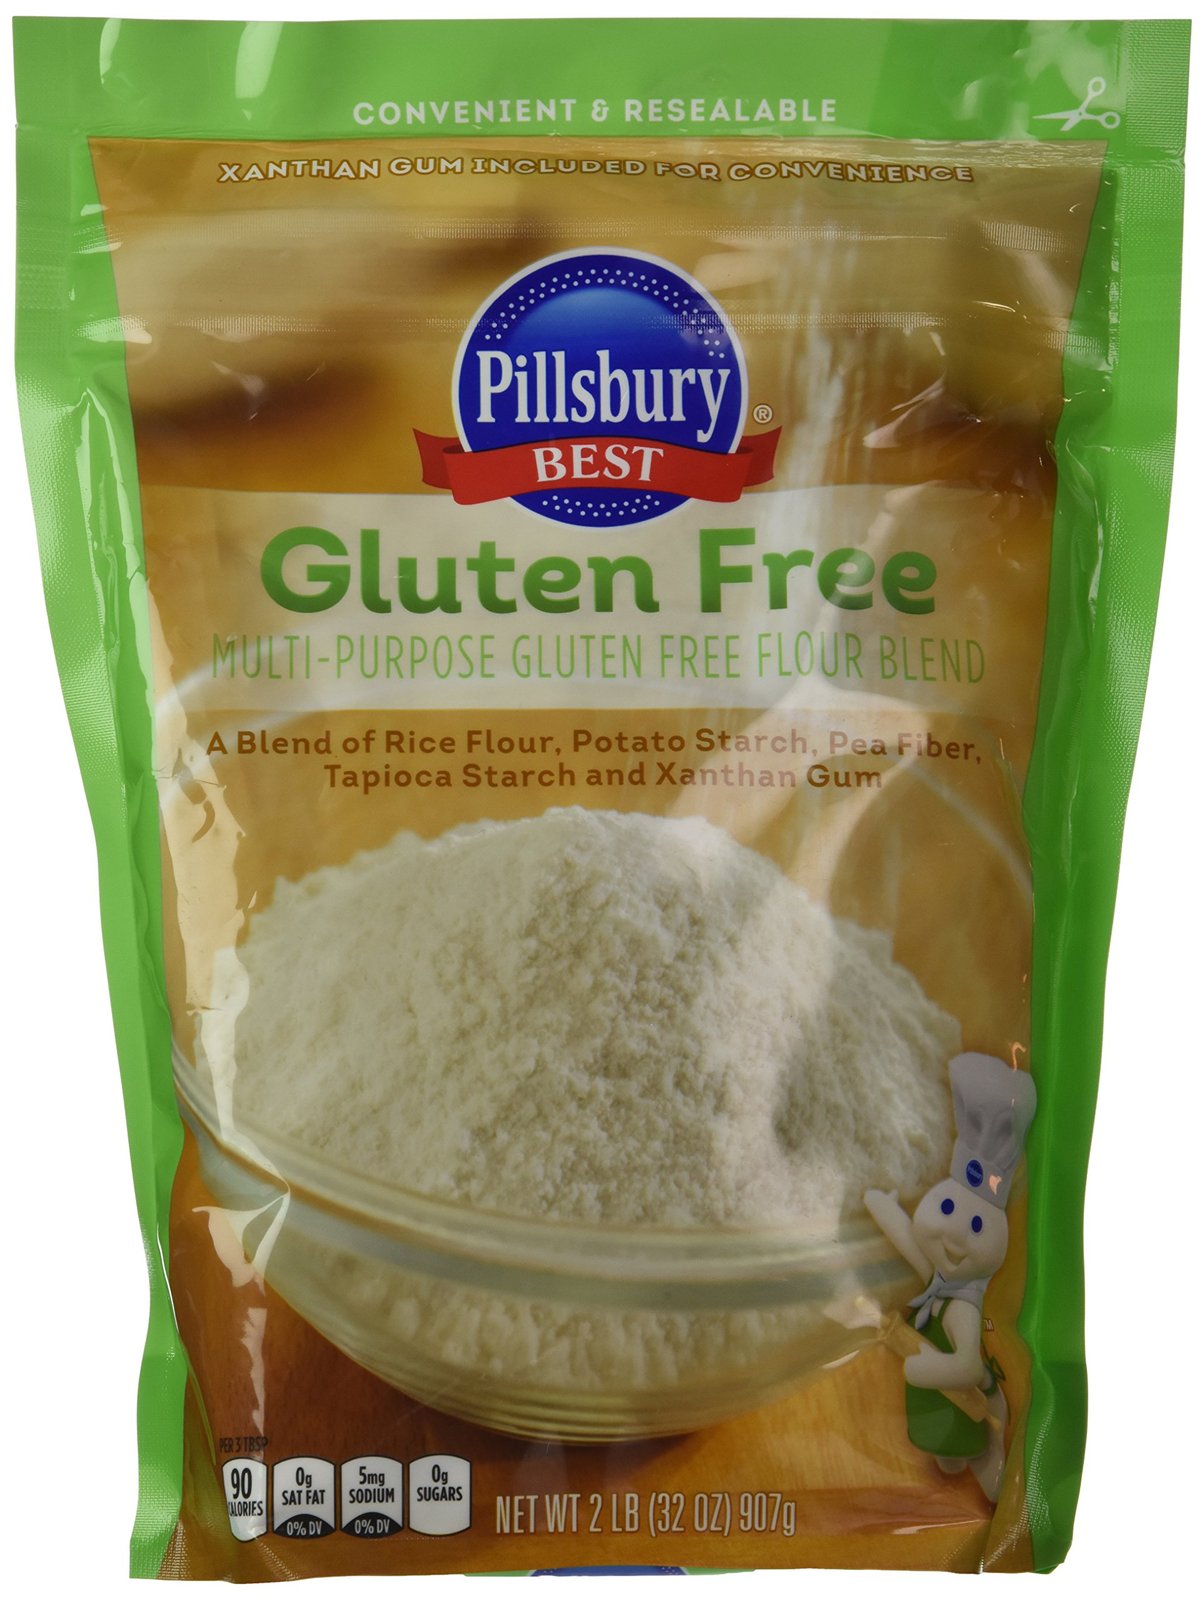 Pillsbury Best Gluten Free Flour Blend Pack of 2